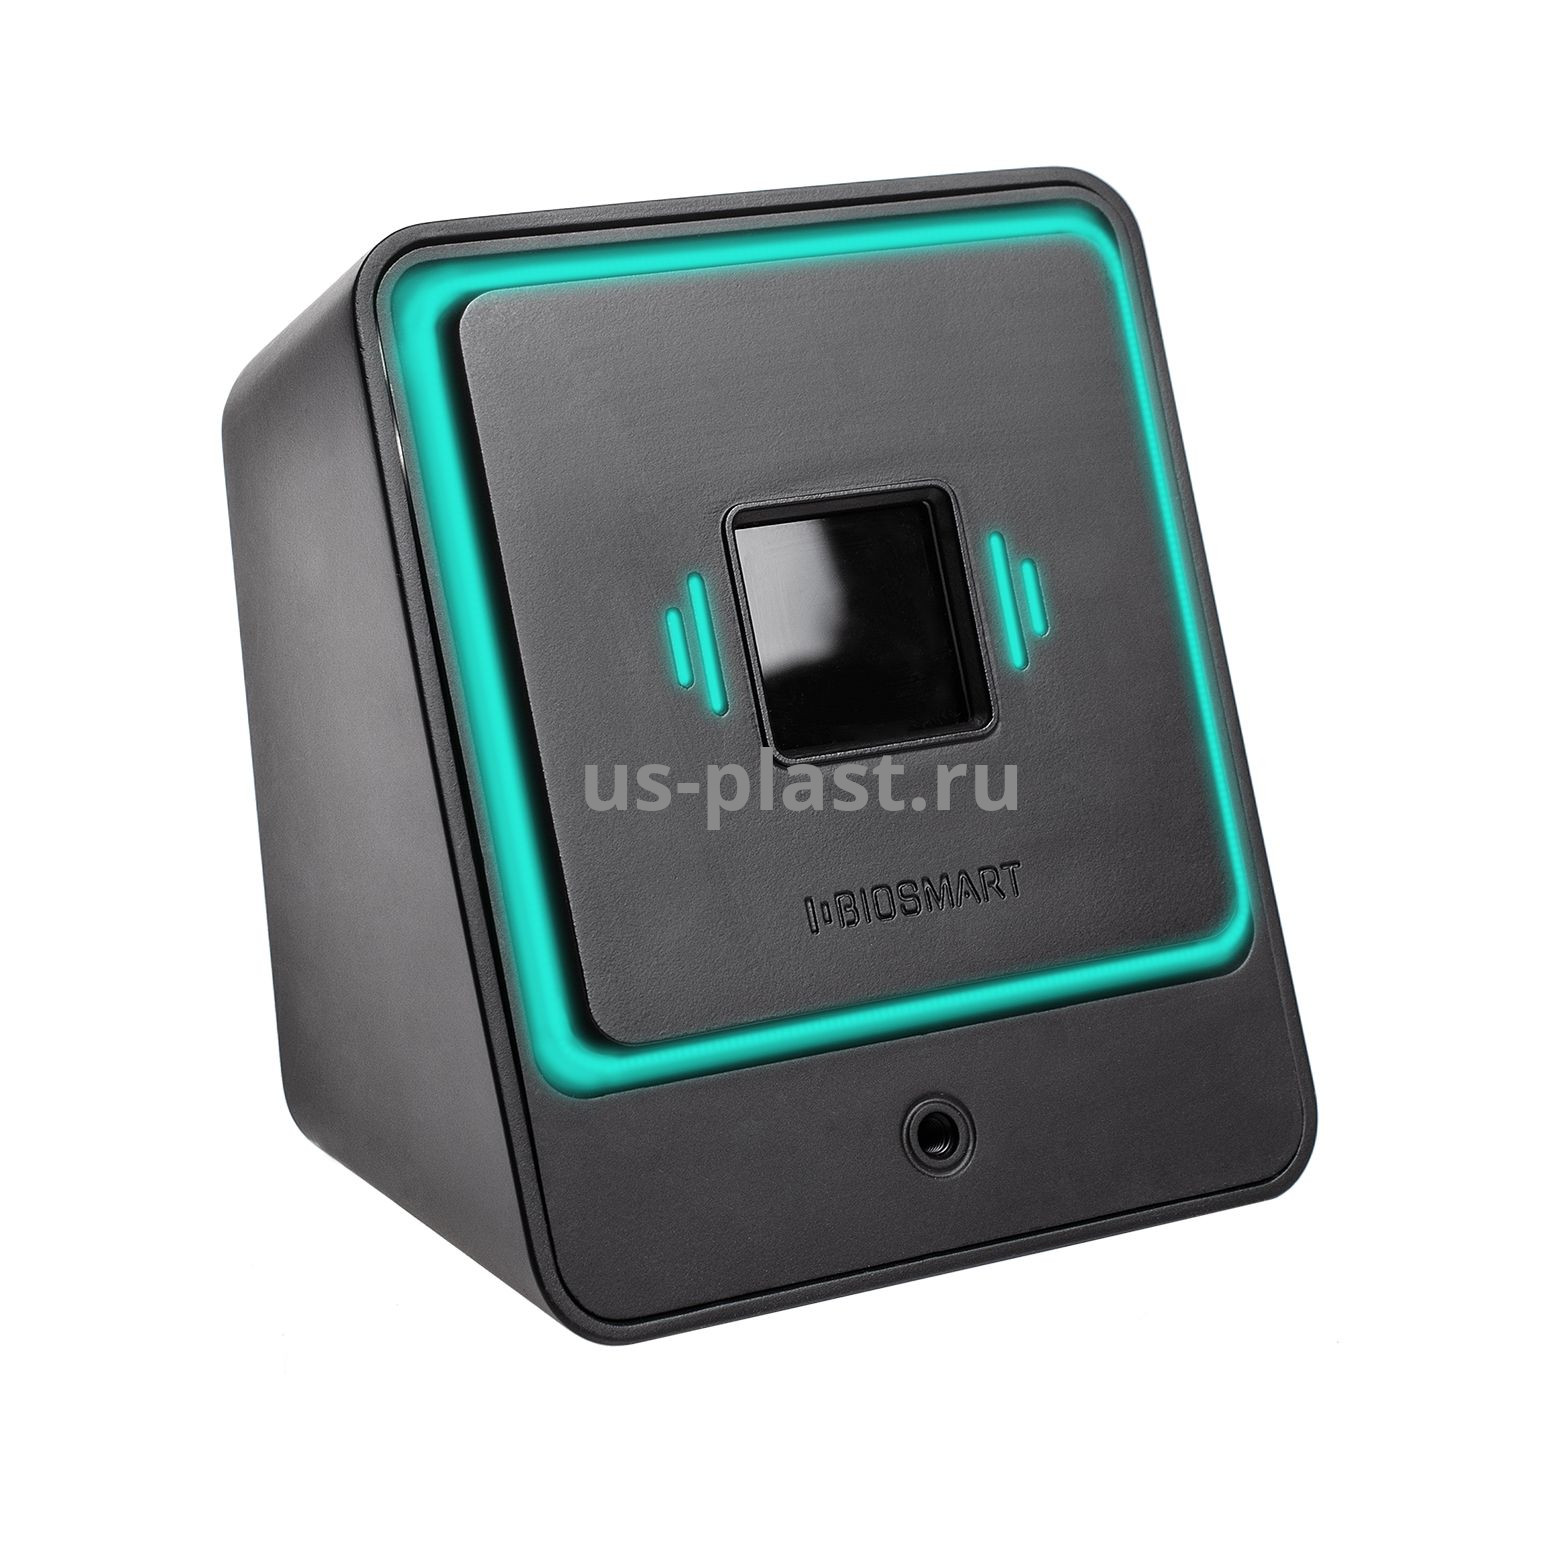 BioSmart PALMJET BOX-Т, биометрический считыватель вен ладони и RFID-карт с дистанционной термометрией